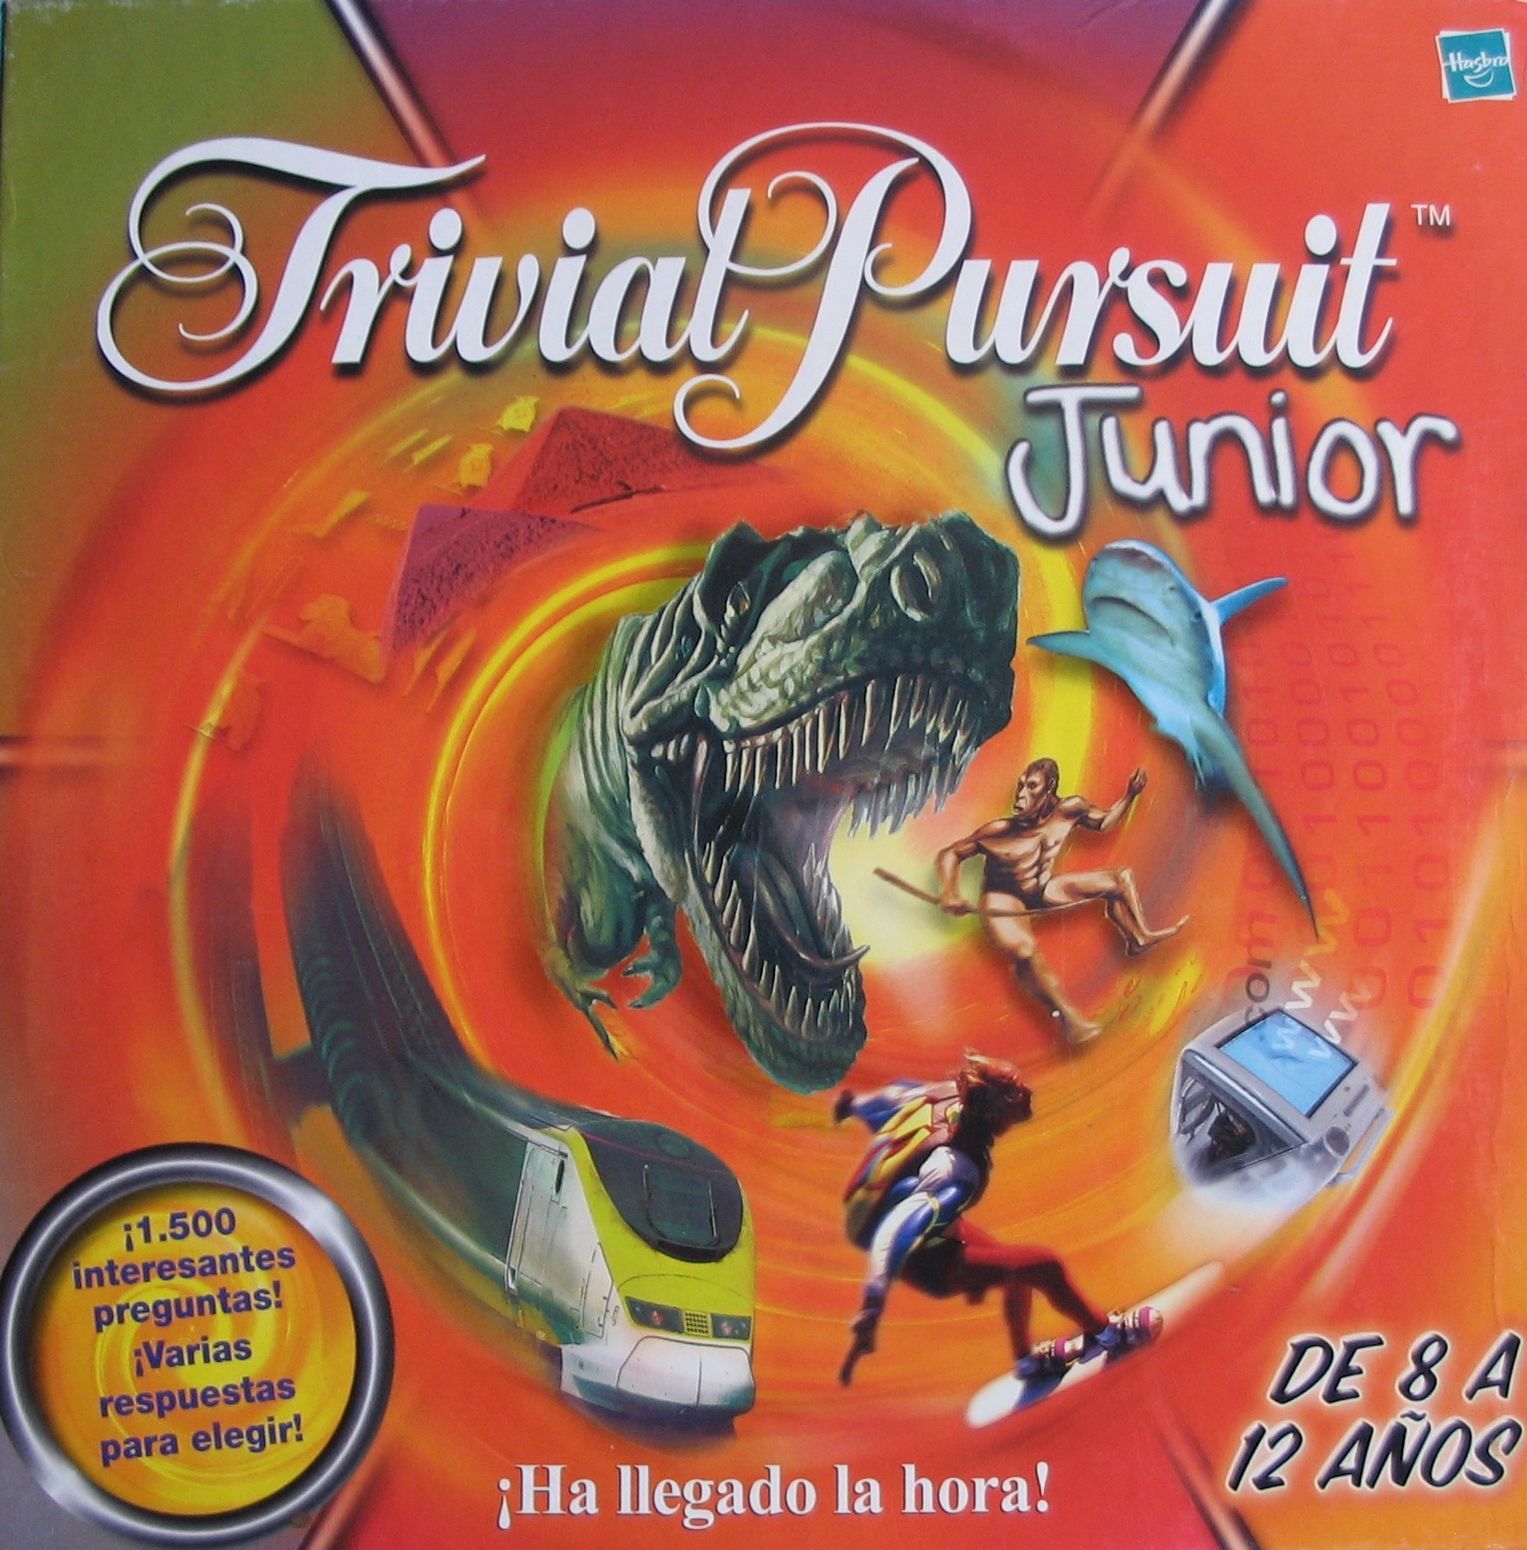 Trivial Pursuit: Junior, Image